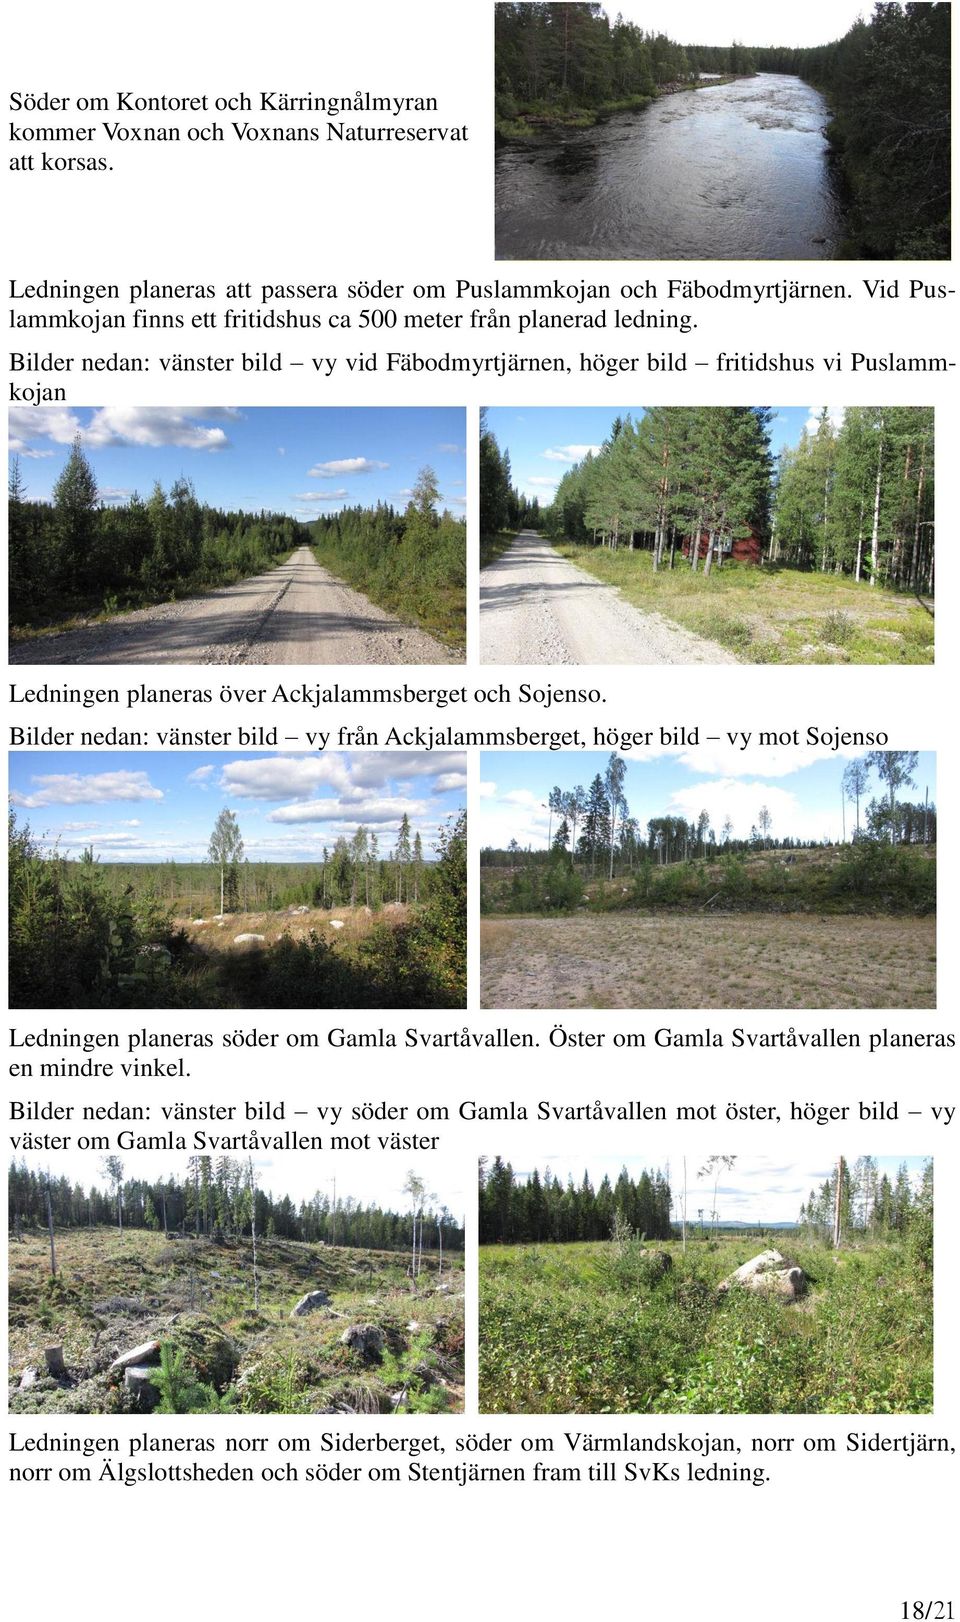 Bilder nedan: vänster bild vy vid Fäbodmyrtjärnen, höger bild fritidshus vi Puslammkojan Ledningen planeras över Ackjalammsberget och Sojenso.